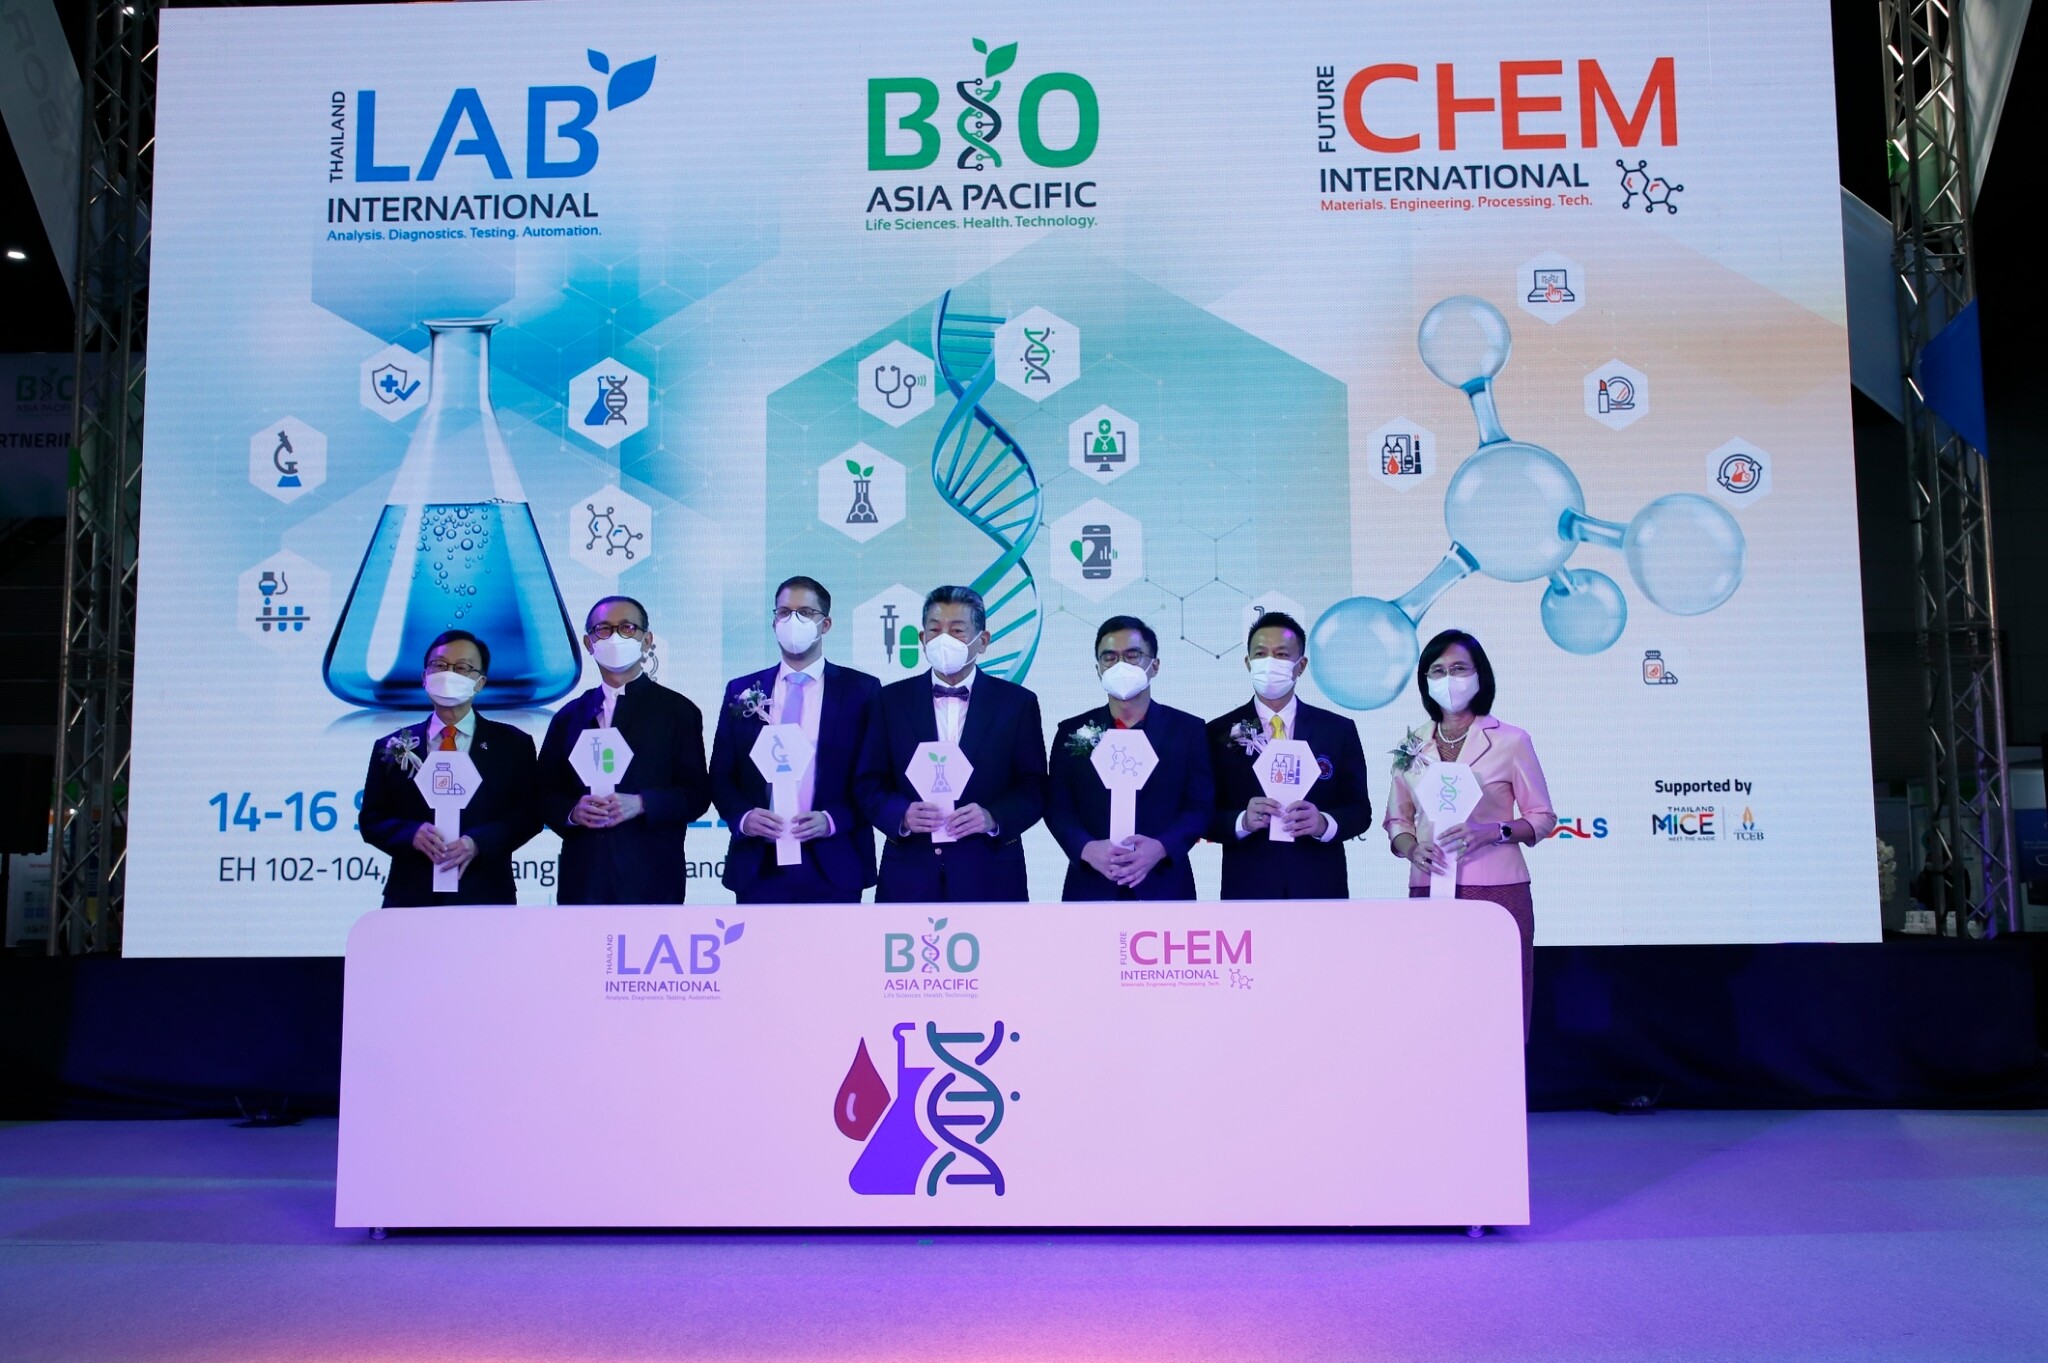 วว. ร่วมพิธีเปิดงานเทคโนโลยีเครื่องมือห้องปฏิบัติการทางวิทยาศาสตร์ชั้นนำในภูมิภาคเอเชีย Thailand LAB INTERNATIONAL 2022 , Bio Asia Pacific 2022, FutureCHEM INTERNATIONAL 2022